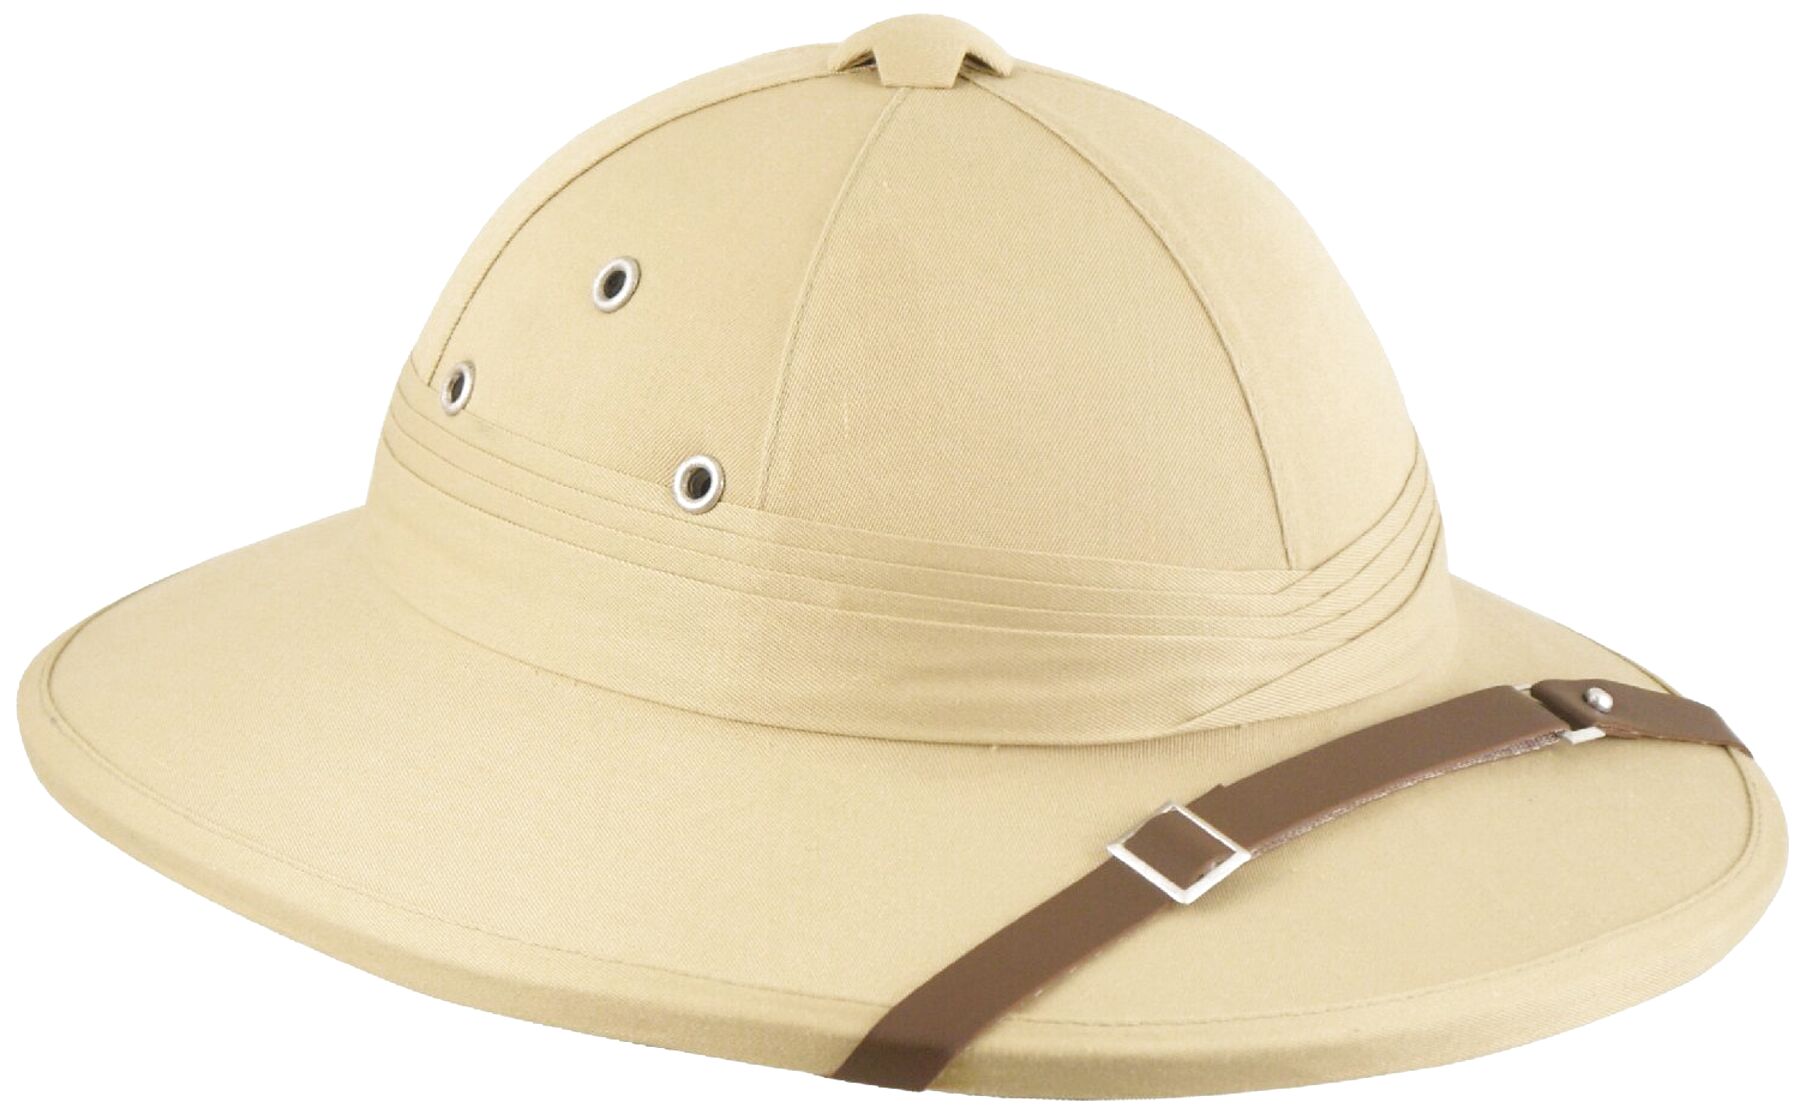 Explorer Hat for sale in UK | 62 used Explorer Hats